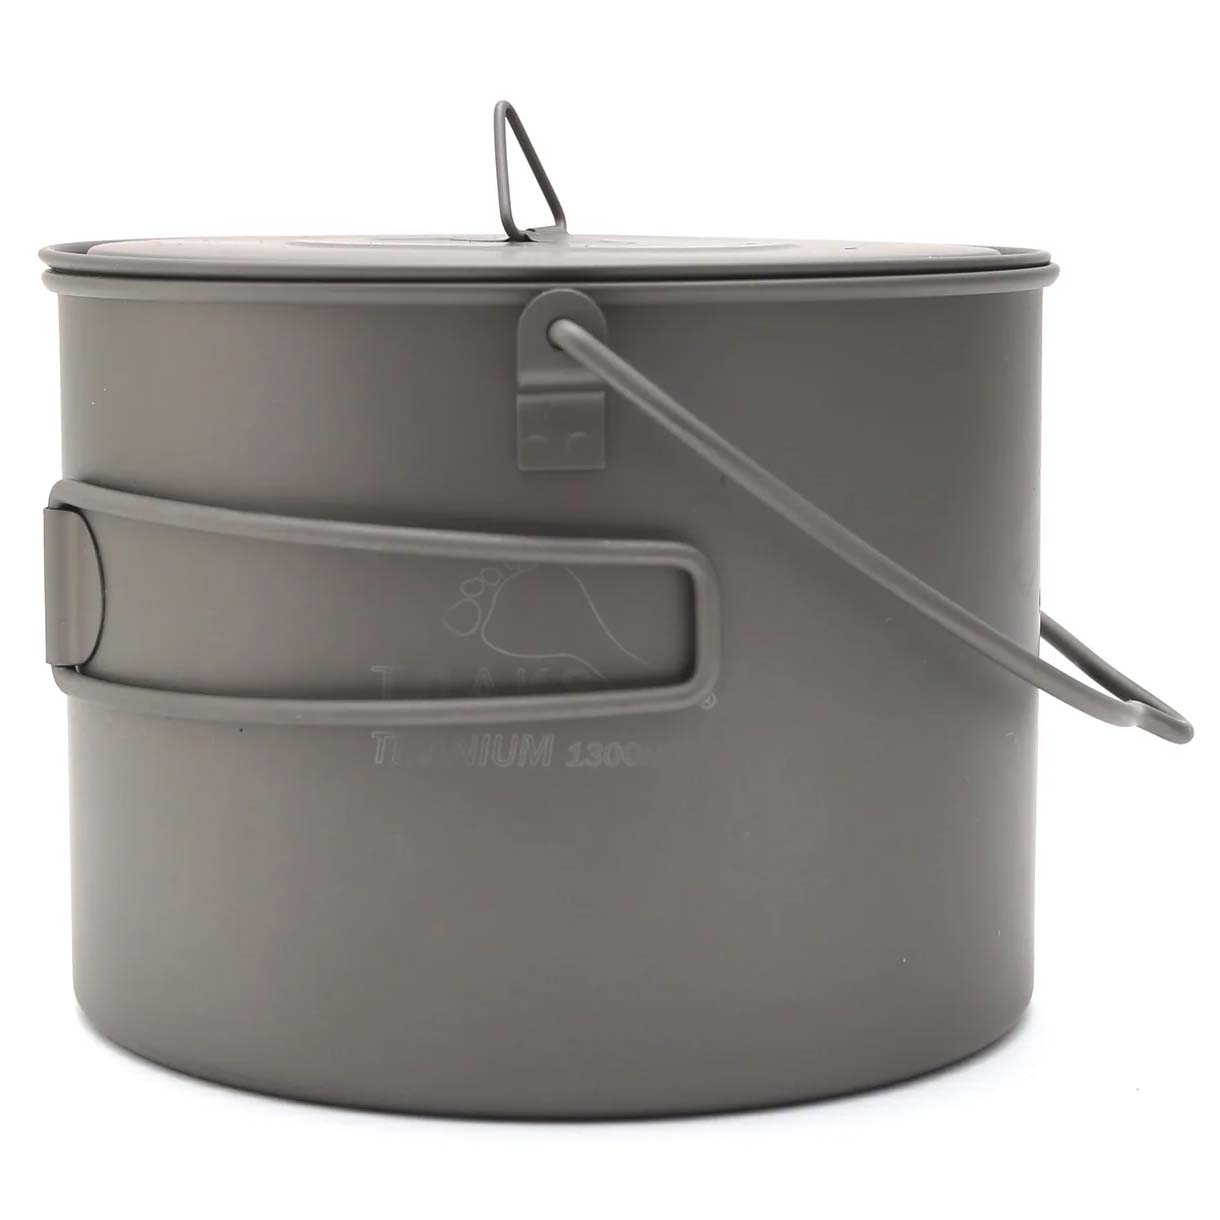 Toaks Titanium Pot With Bail Handle Ultralight Camping Cookware